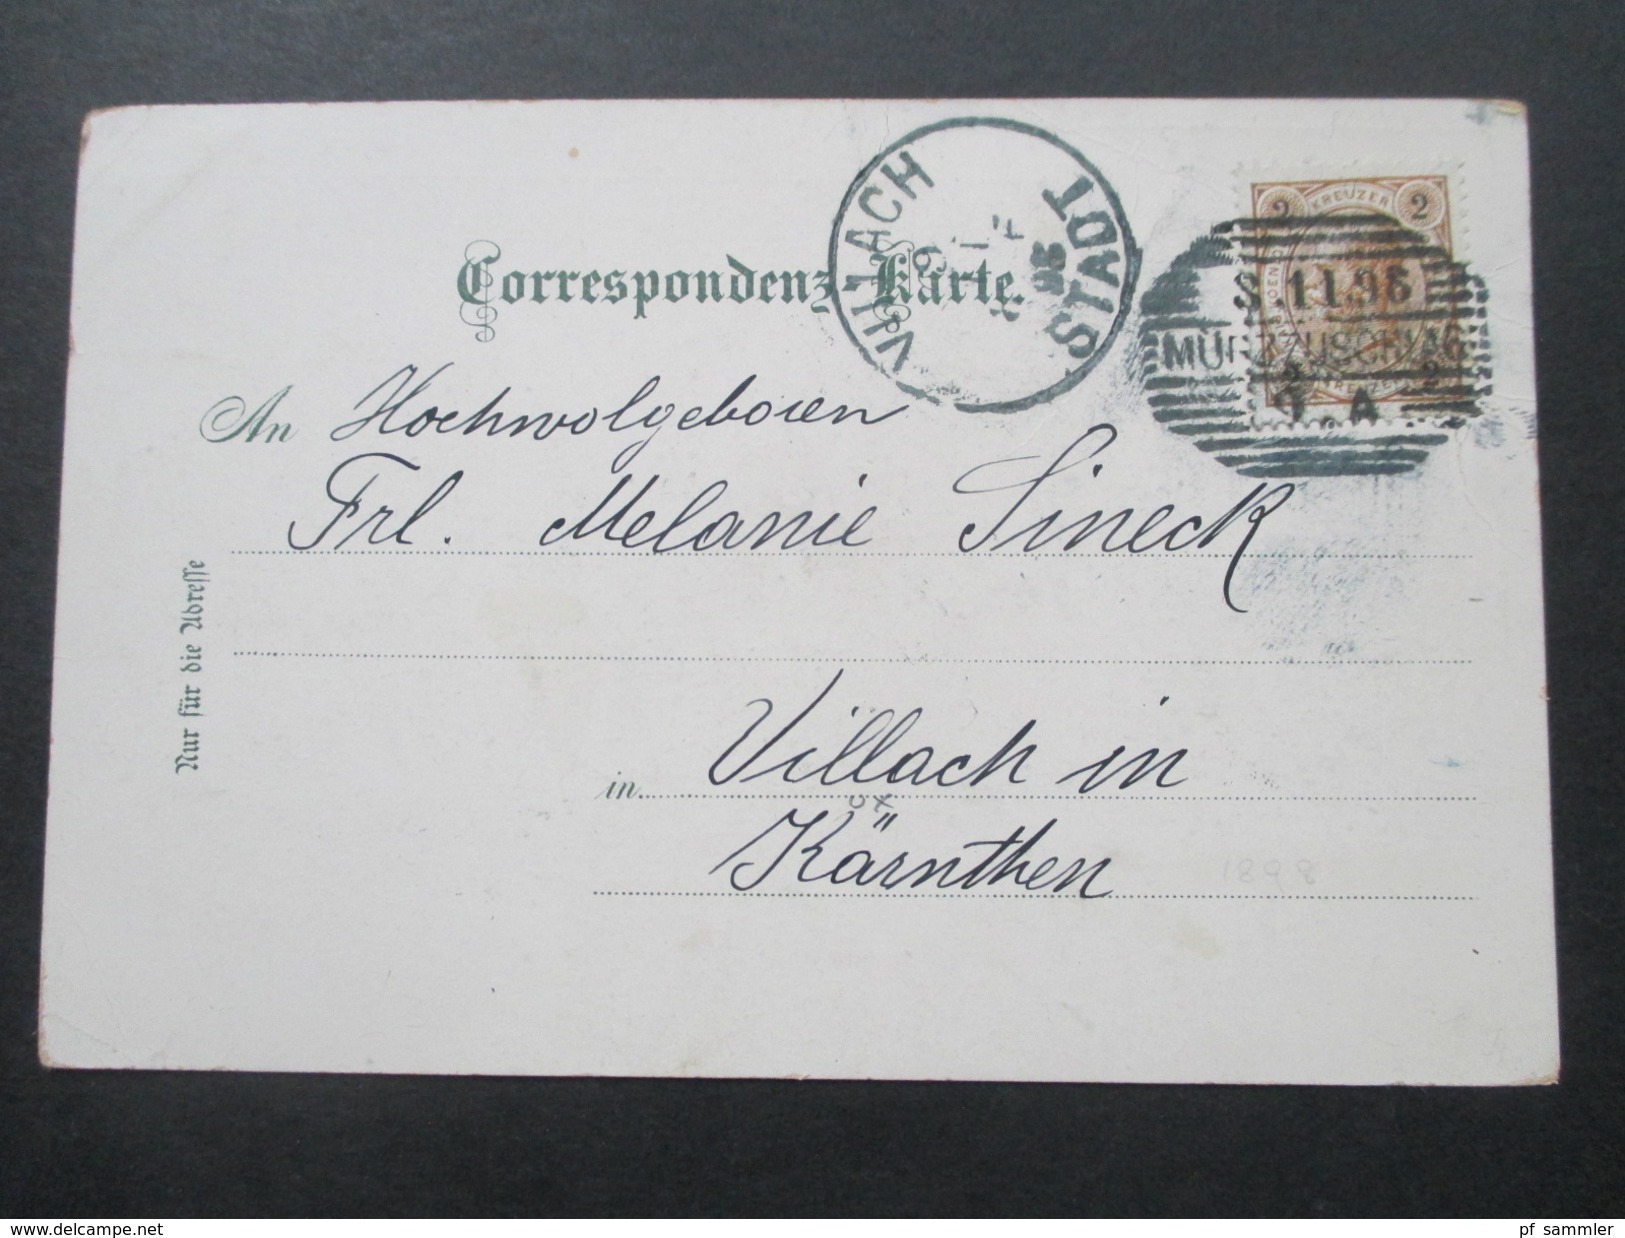 AK / Lithografie 1898 Gruss aus Mürzzuschlag. Mehrbildkarte Kurhaus / Schneealpe. Verlag v. M. Riegler. Strichstempel